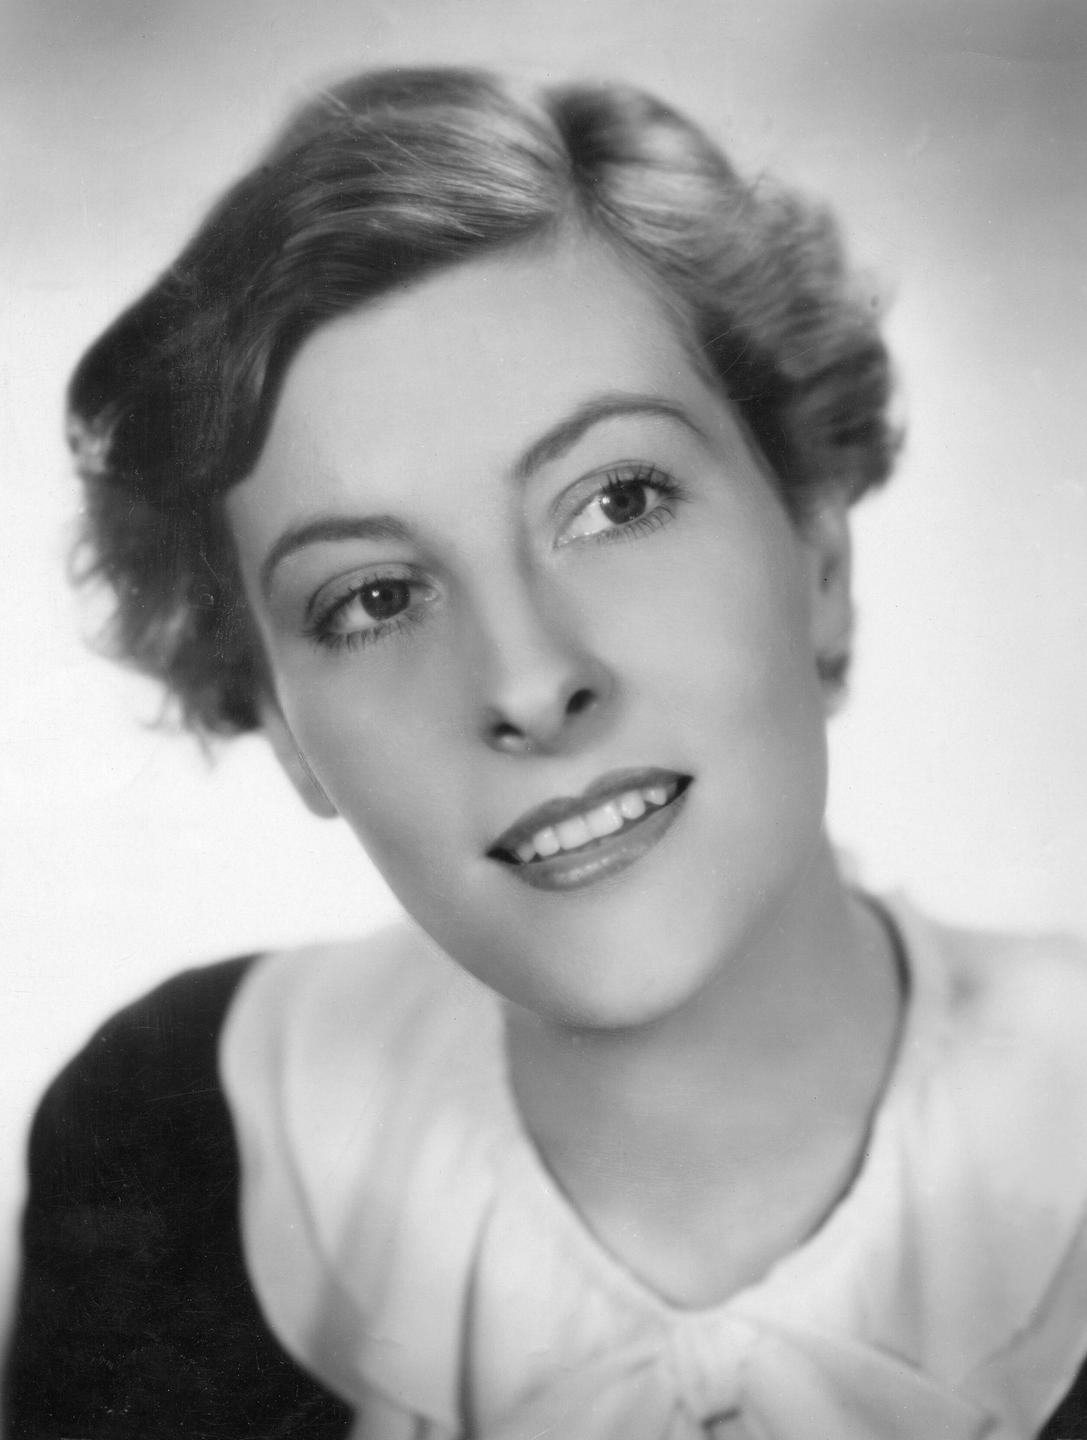 Eine historische schwarzweiss Aufnahme der deutschen Schauspielerin Marianne Hoppe von 1935.